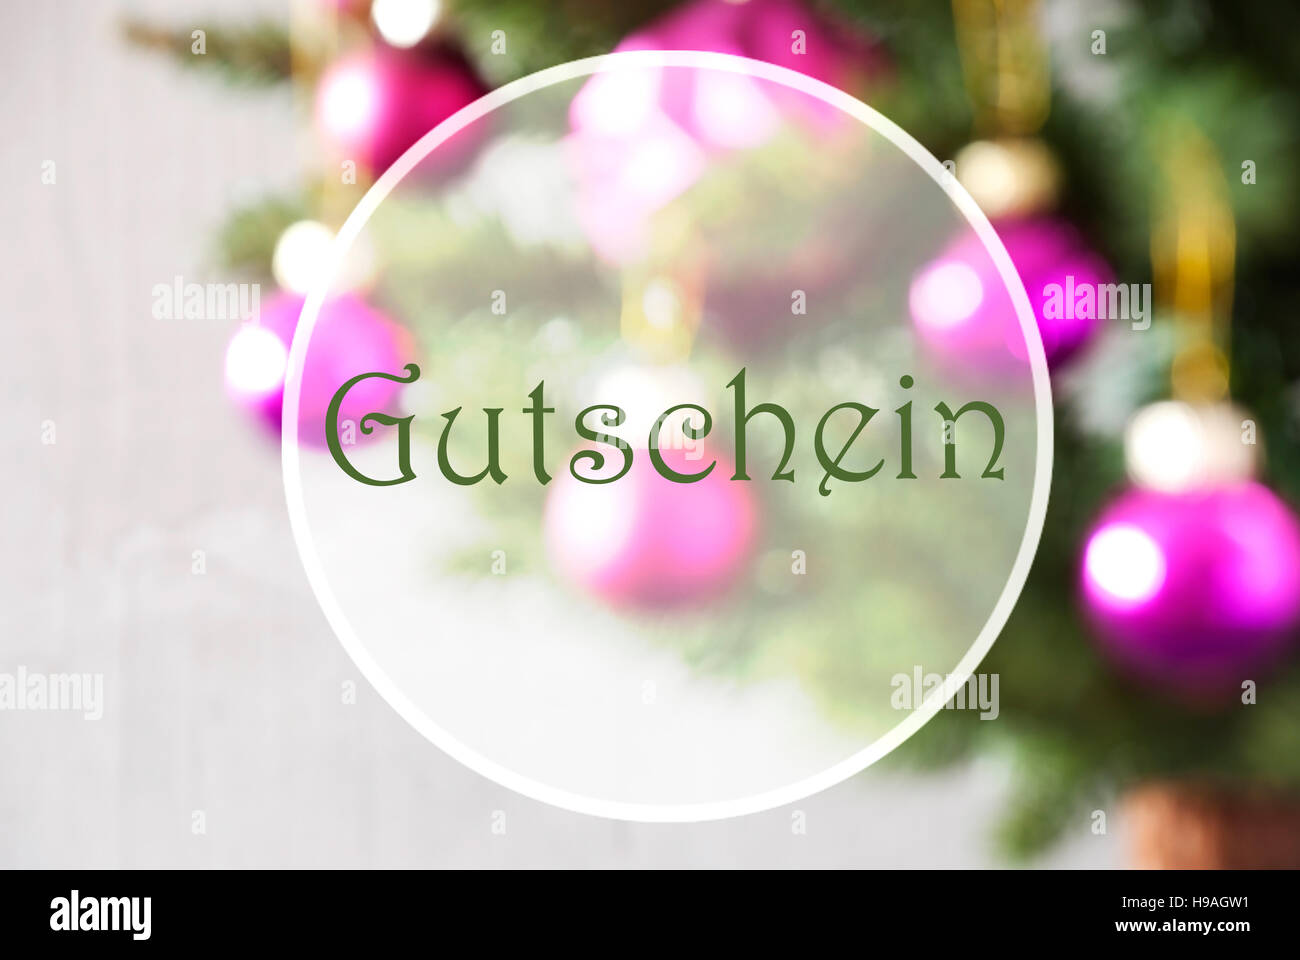 Blurry Balls, Rose Quartz, Gutschein Means Voucher Stock Photo